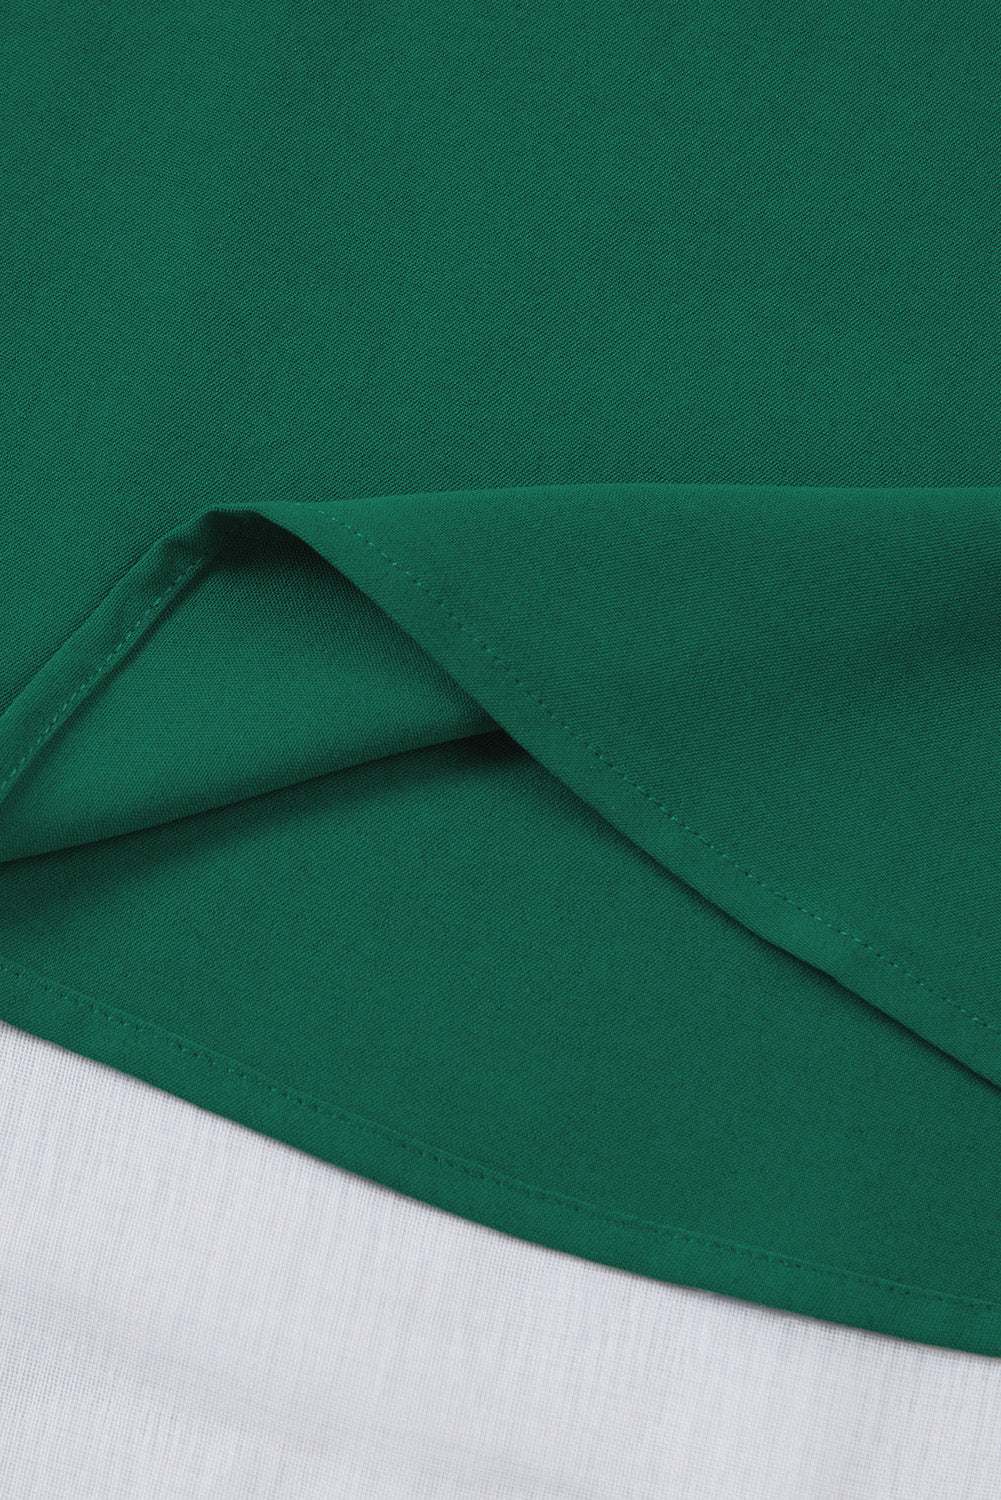 Grüne lockere Bluse mit ausgestellten Ärmeln und V-Ausschnitt